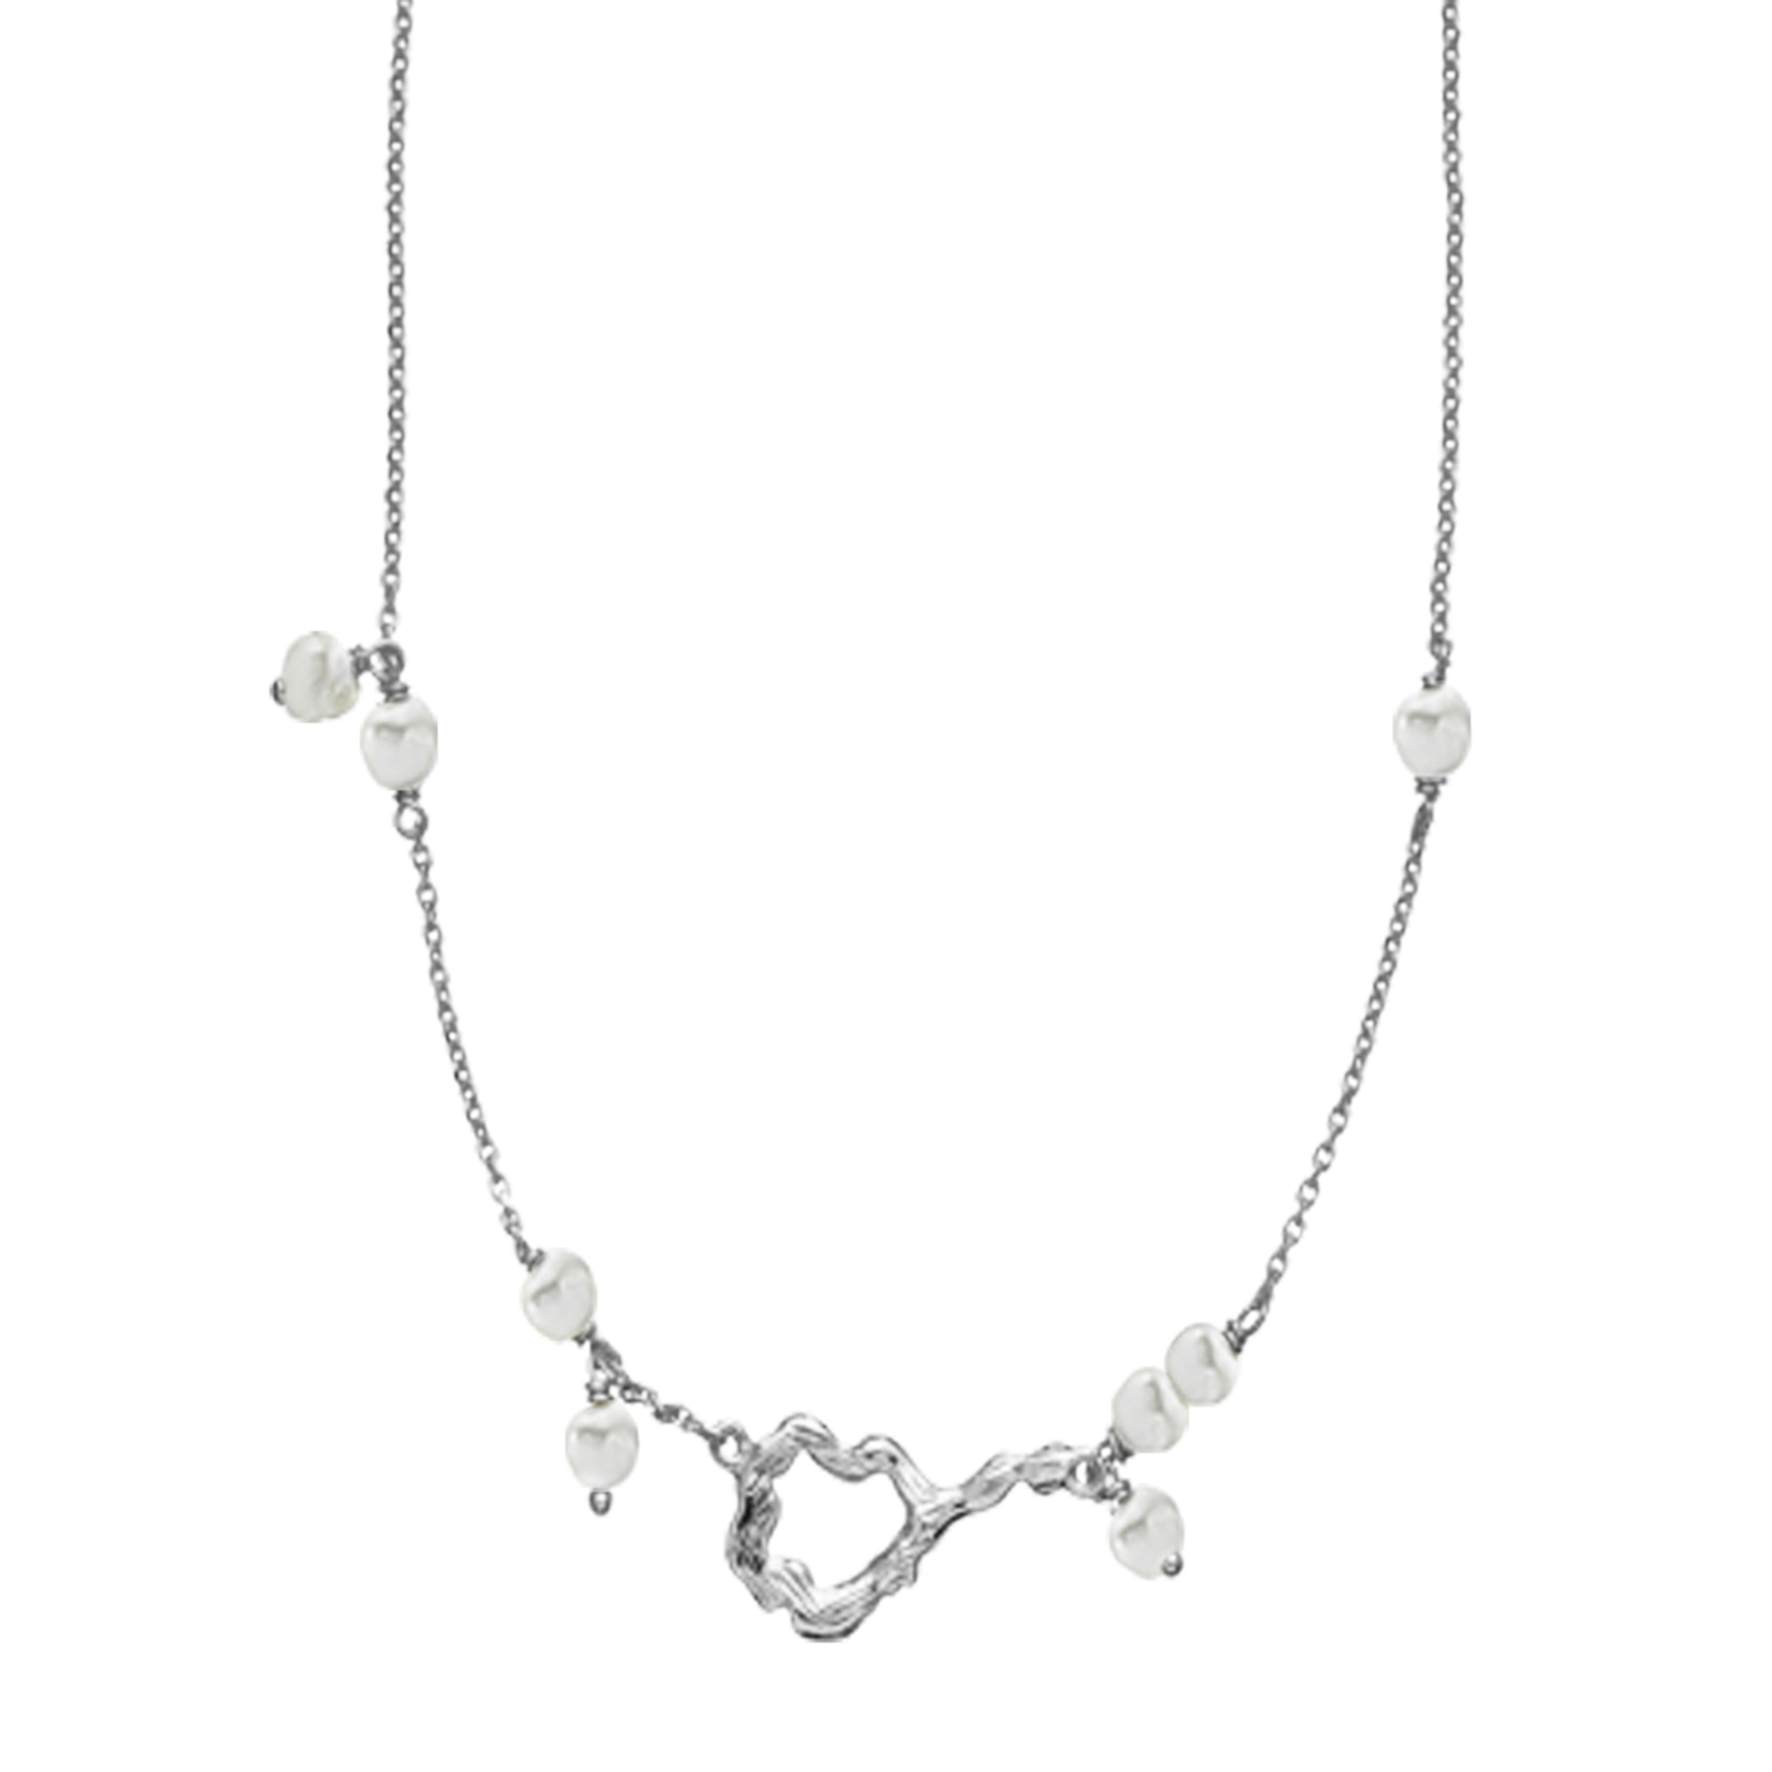 Lærke Bentsen By Sistie Necklace With Pearls fra Sistie i Sølv Sterling 925